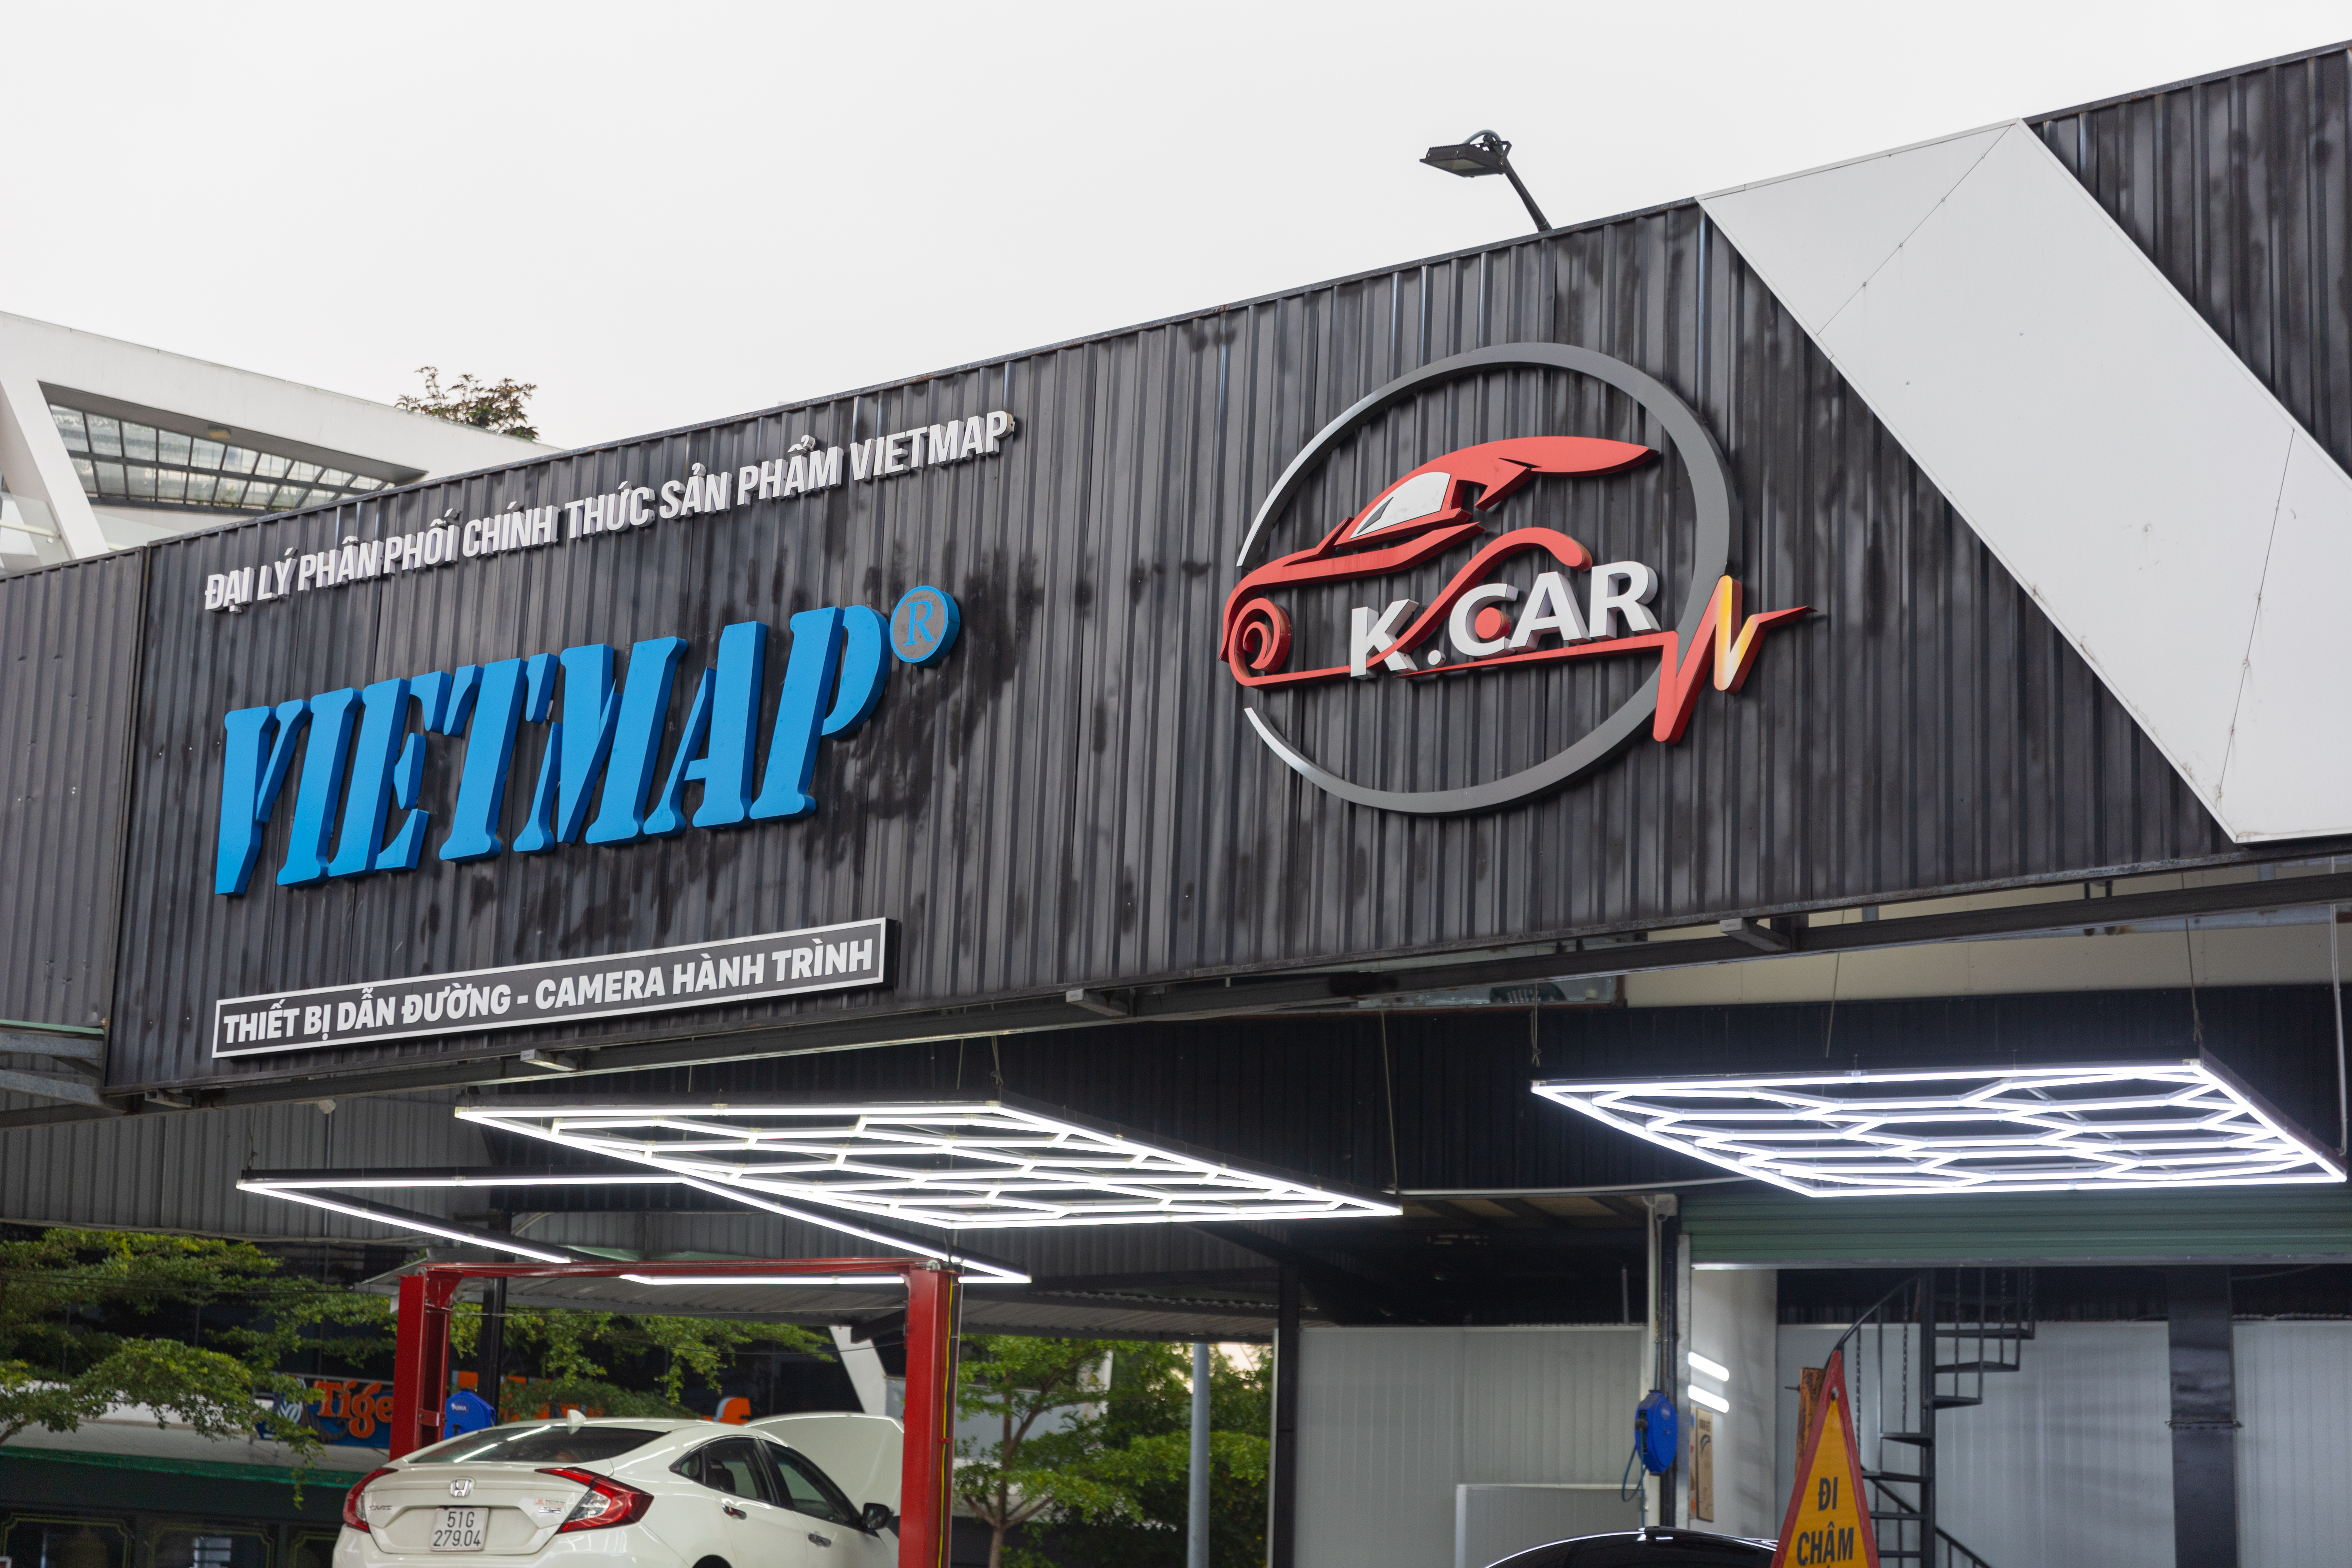 K.CAR Auto - Đại lý phân phối lắp đặt các sản phẩm VIETMAP uy tín tại thị trường Quận 2 